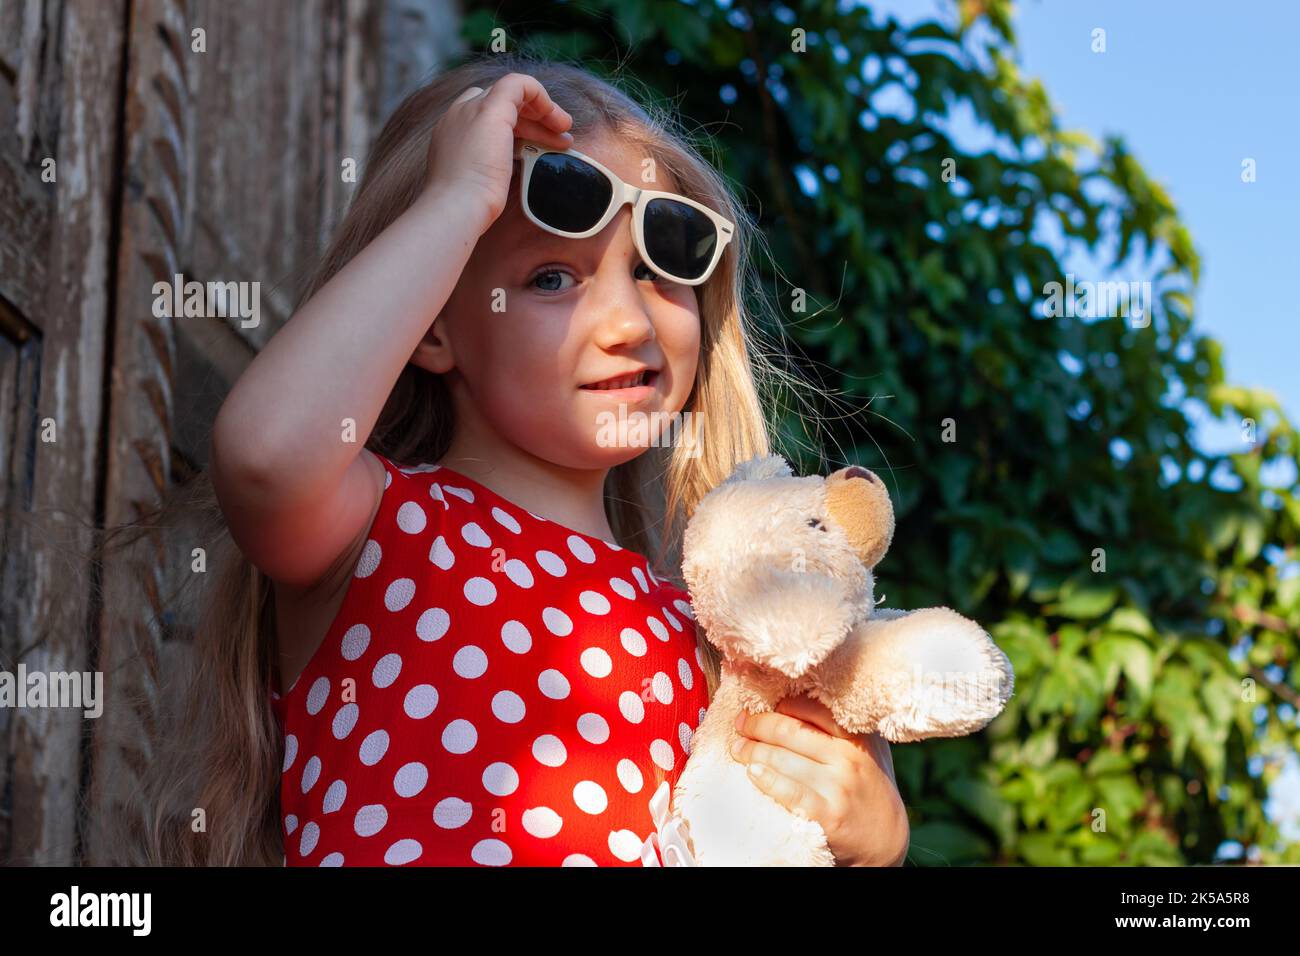 Schöne glückliche Mädchen in roten Polka dot Kleid mit Hund Plüsch-Spielzeug lächelnd auf Holzbalkon. Nettes fröhliches Kind mit langen blonden Haaren in Sonnenbrillen auf gree Stockfoto